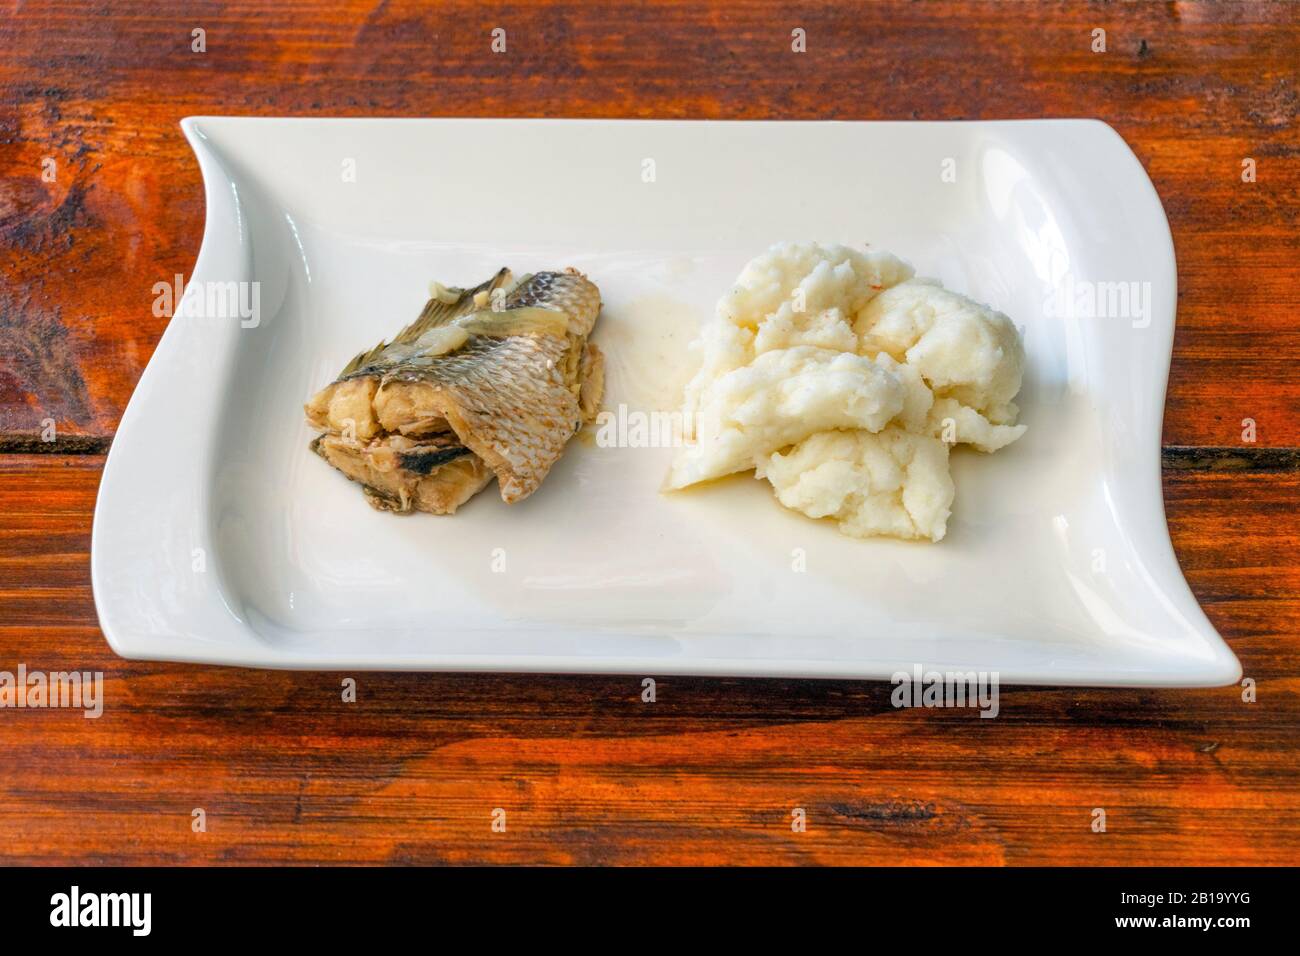 Maismehl-Haferbrei mit gebackenem Fisch - köstliches afrikanisches Mittagessen, Mosambik Stockfoto